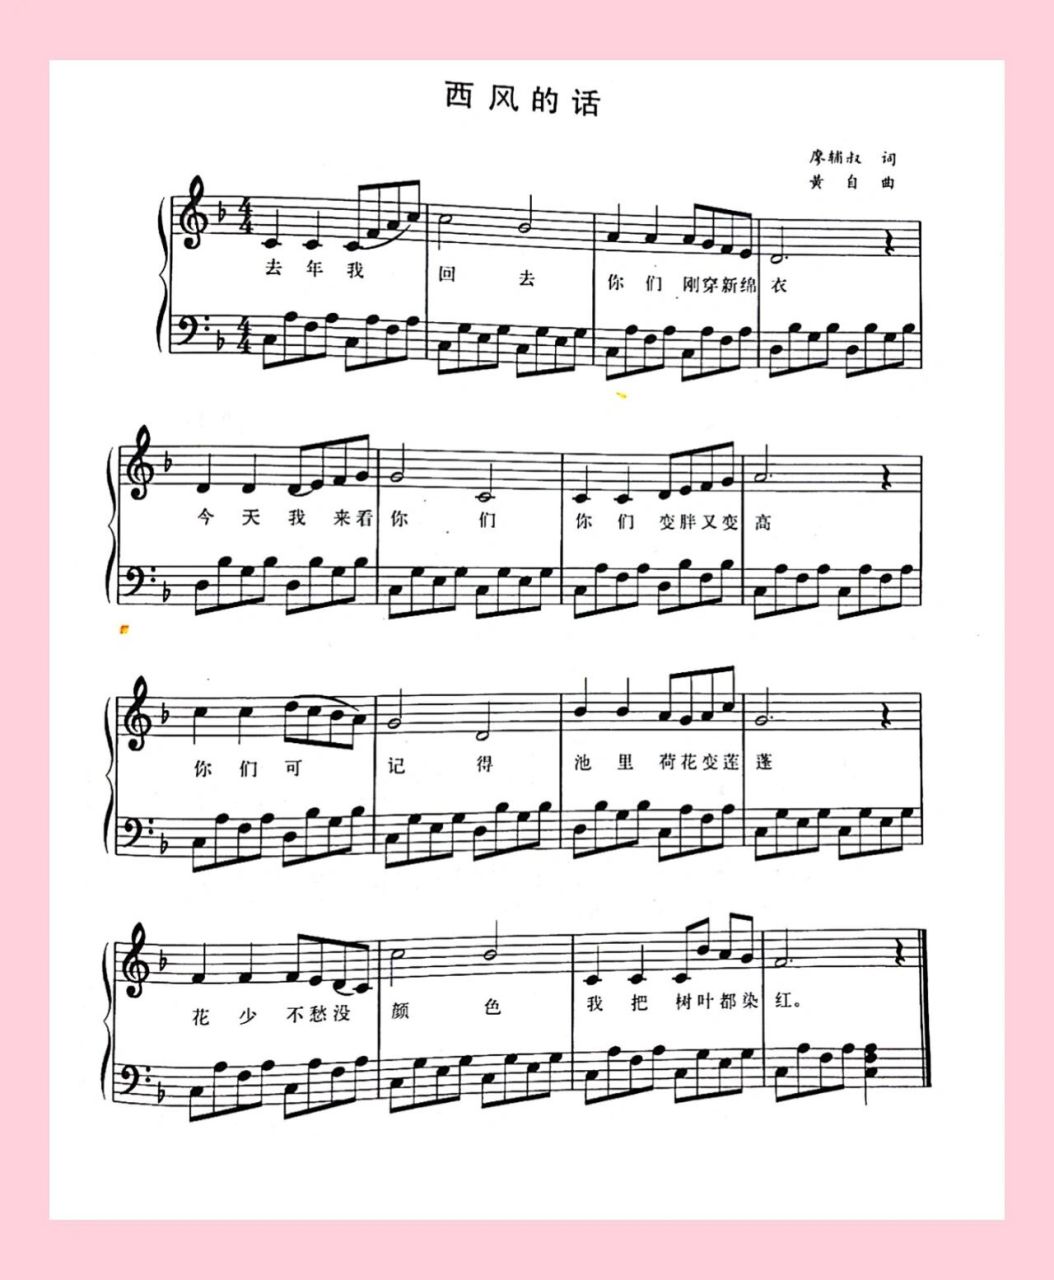 【钢琴】弹奏儿歌:《西风的话》简谱及五线谱